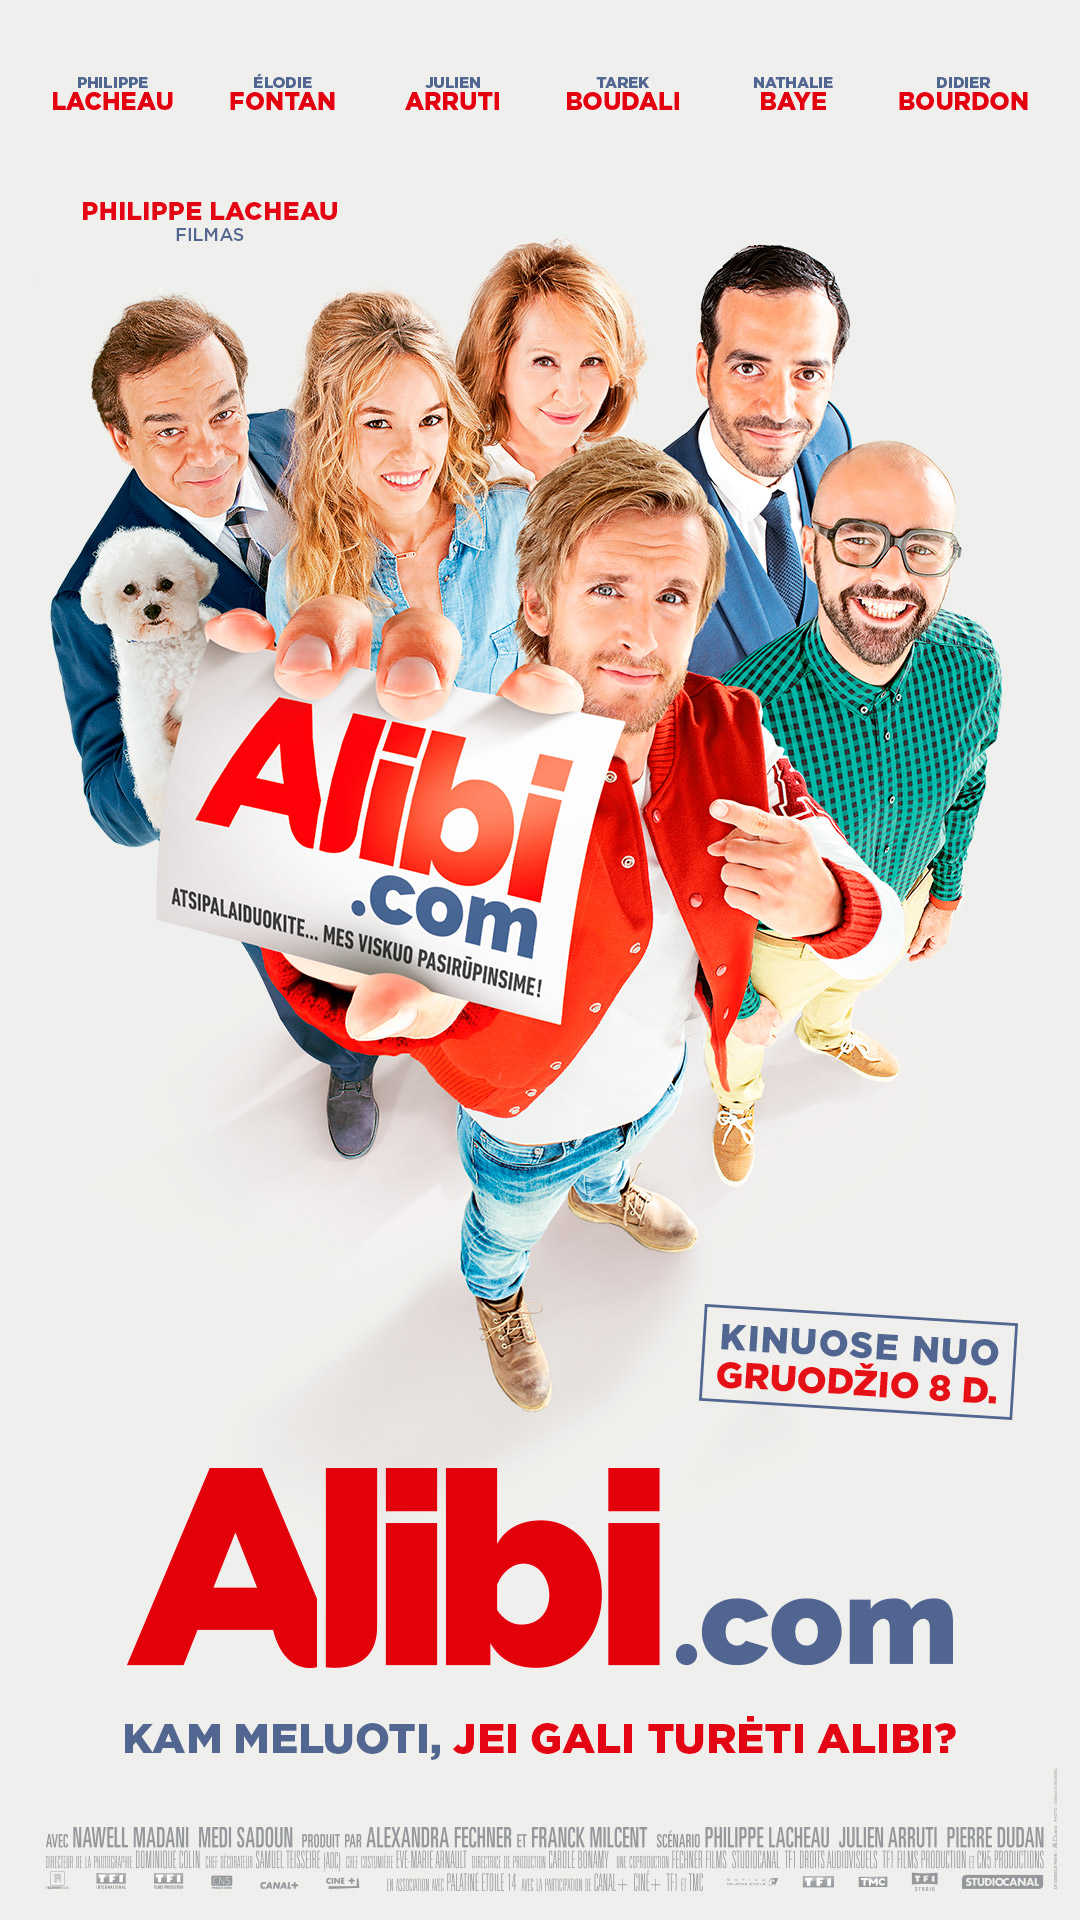 Alibi.com (Alibi.com)